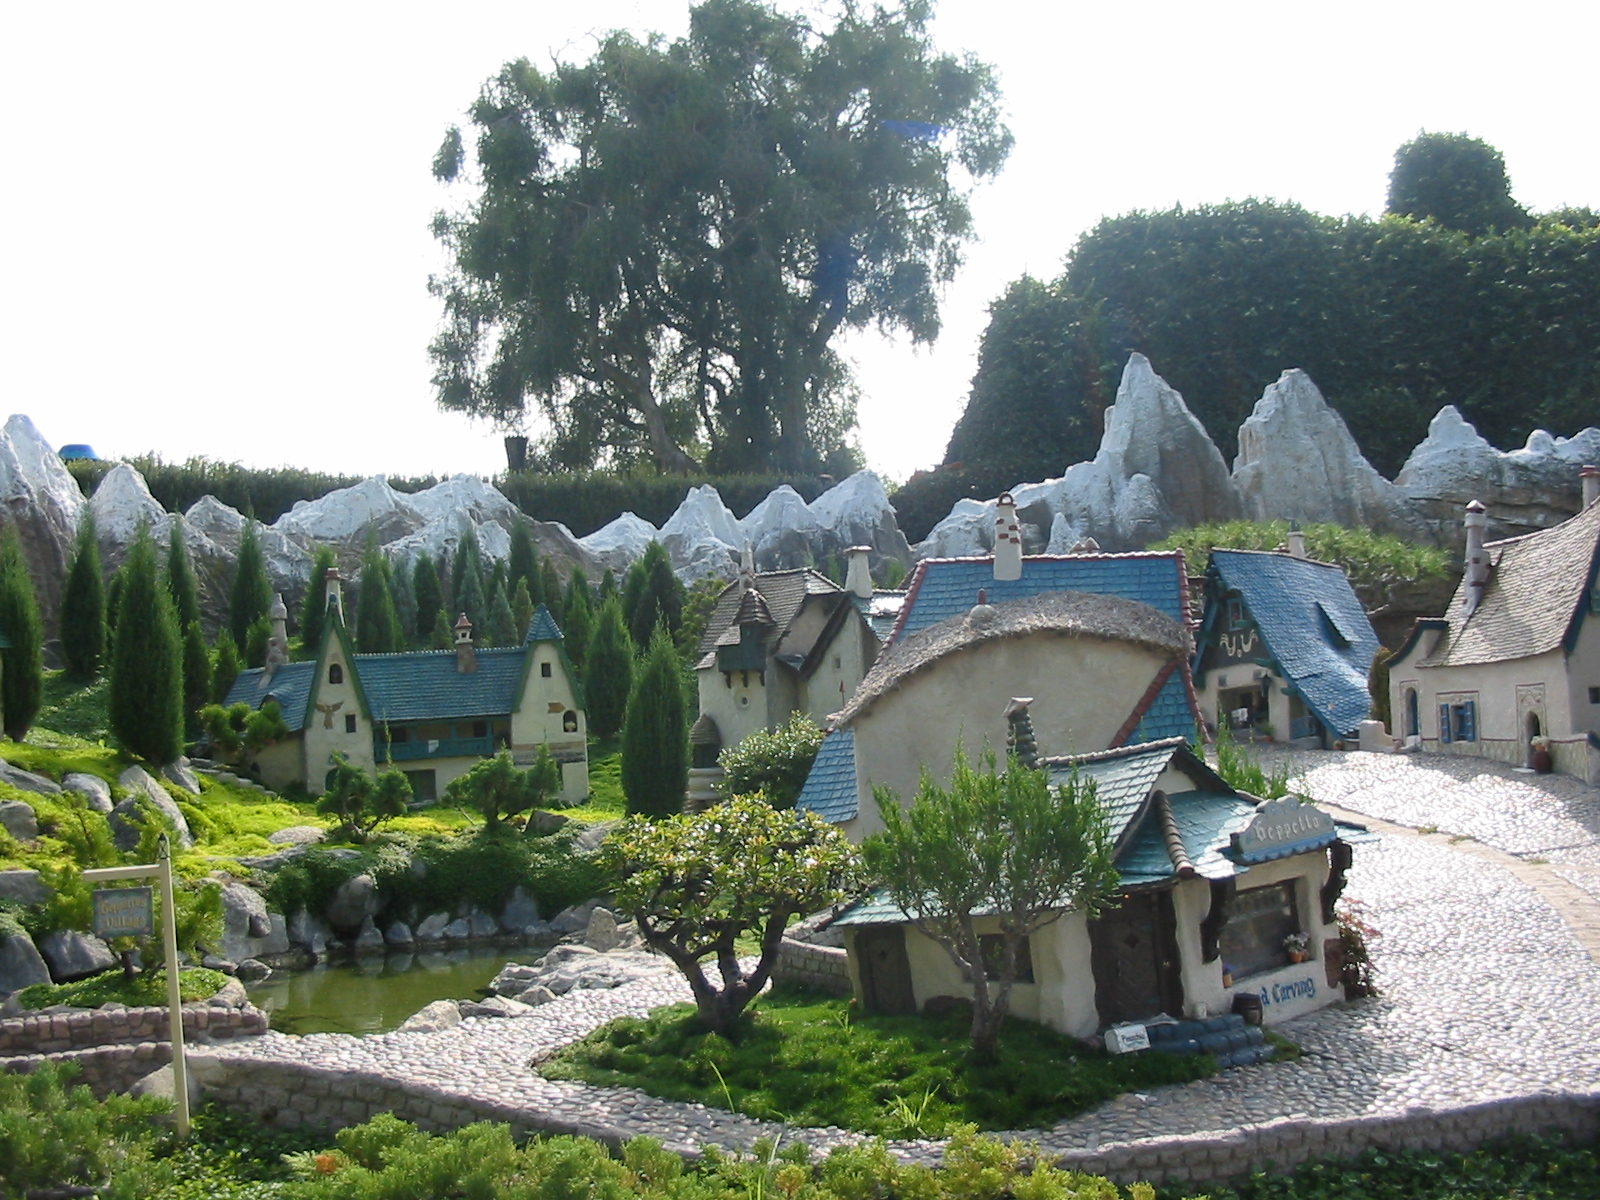 Storybook Land at Disneyland 2005